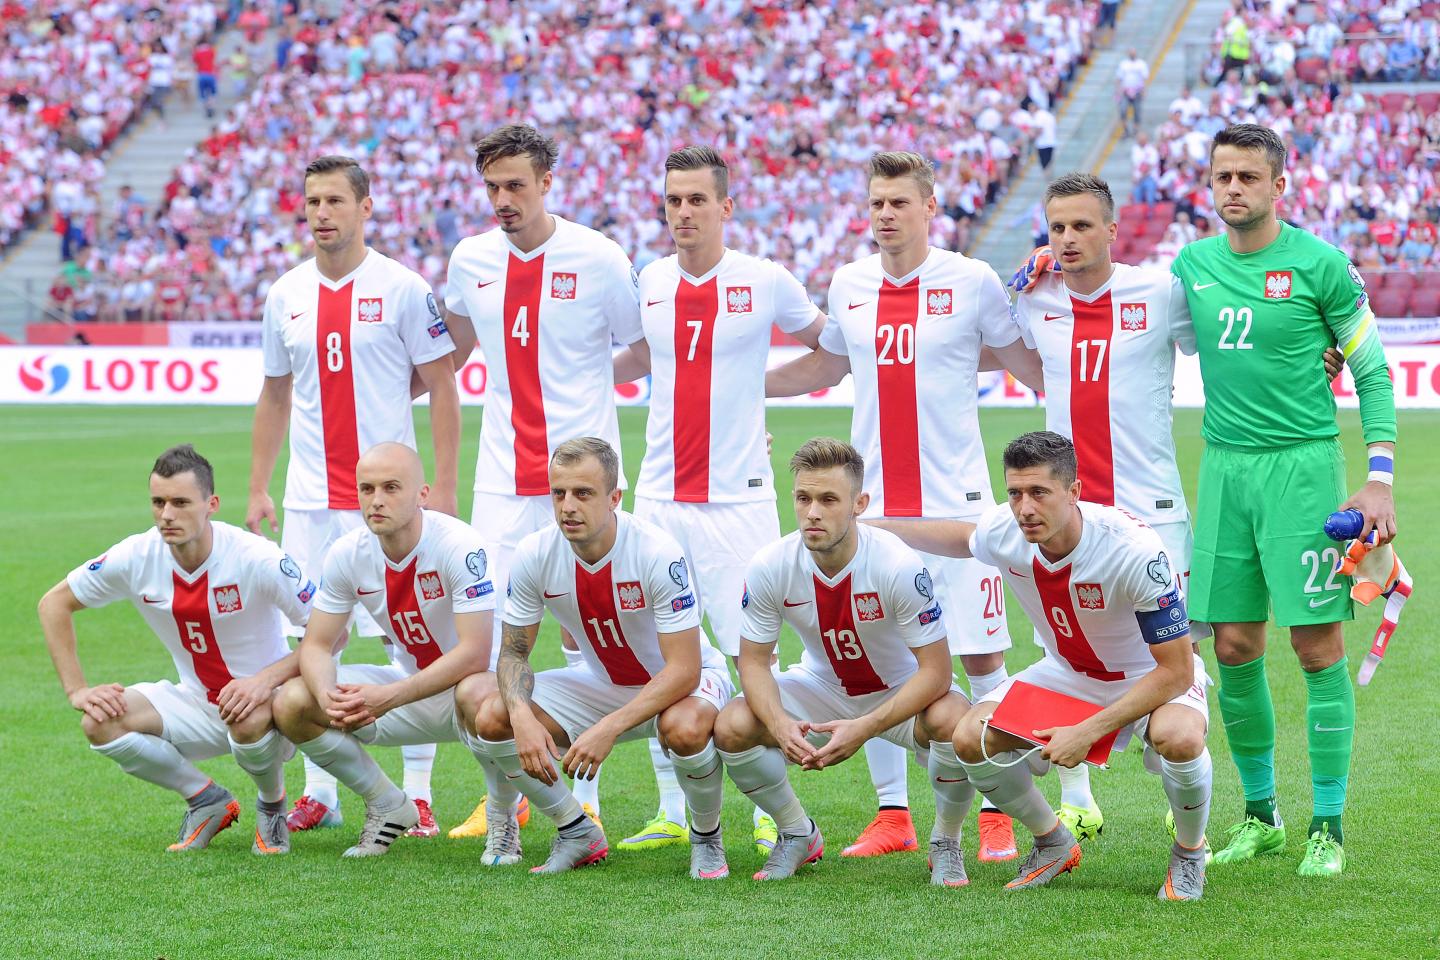 Reprezentacja Polski w białych strojach (koszulki z czerwonym pionowym pasem pośrodku) przed meczem z Gruzją na PGE Narodowym.